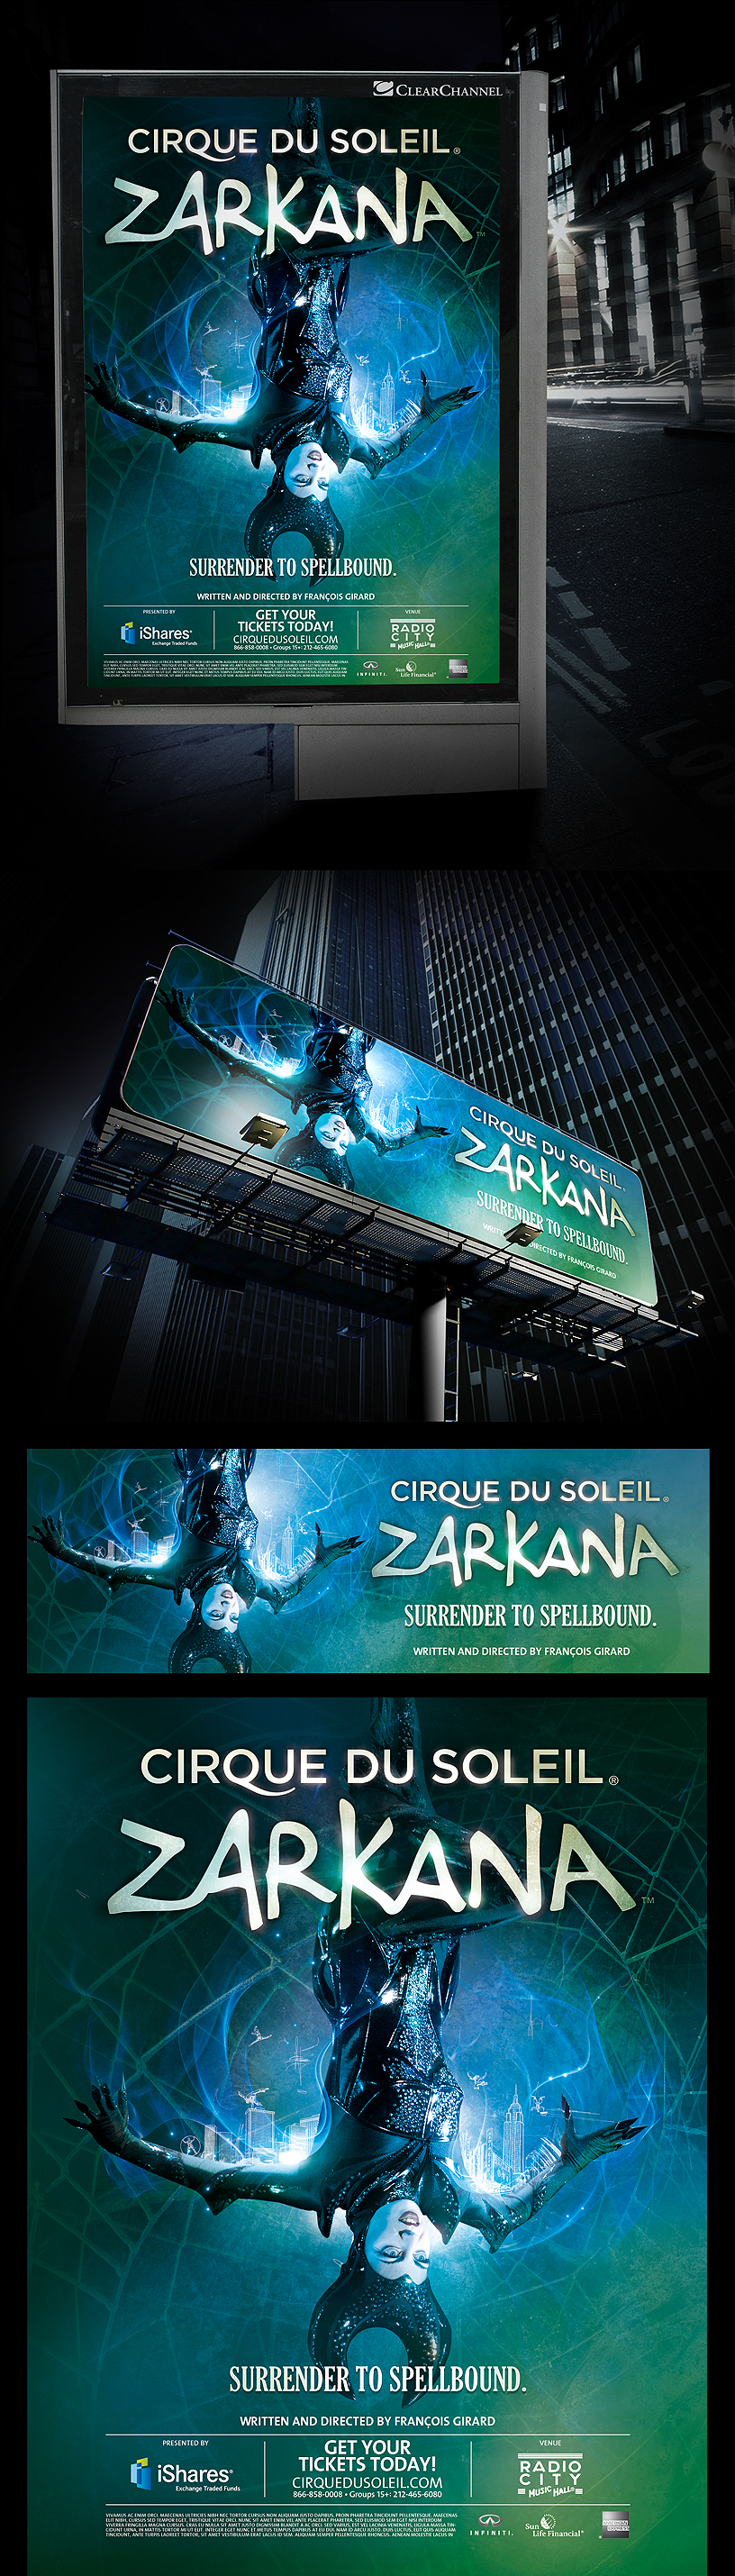 Zarkana cirque du soleil NY Acrobatic Magic   light